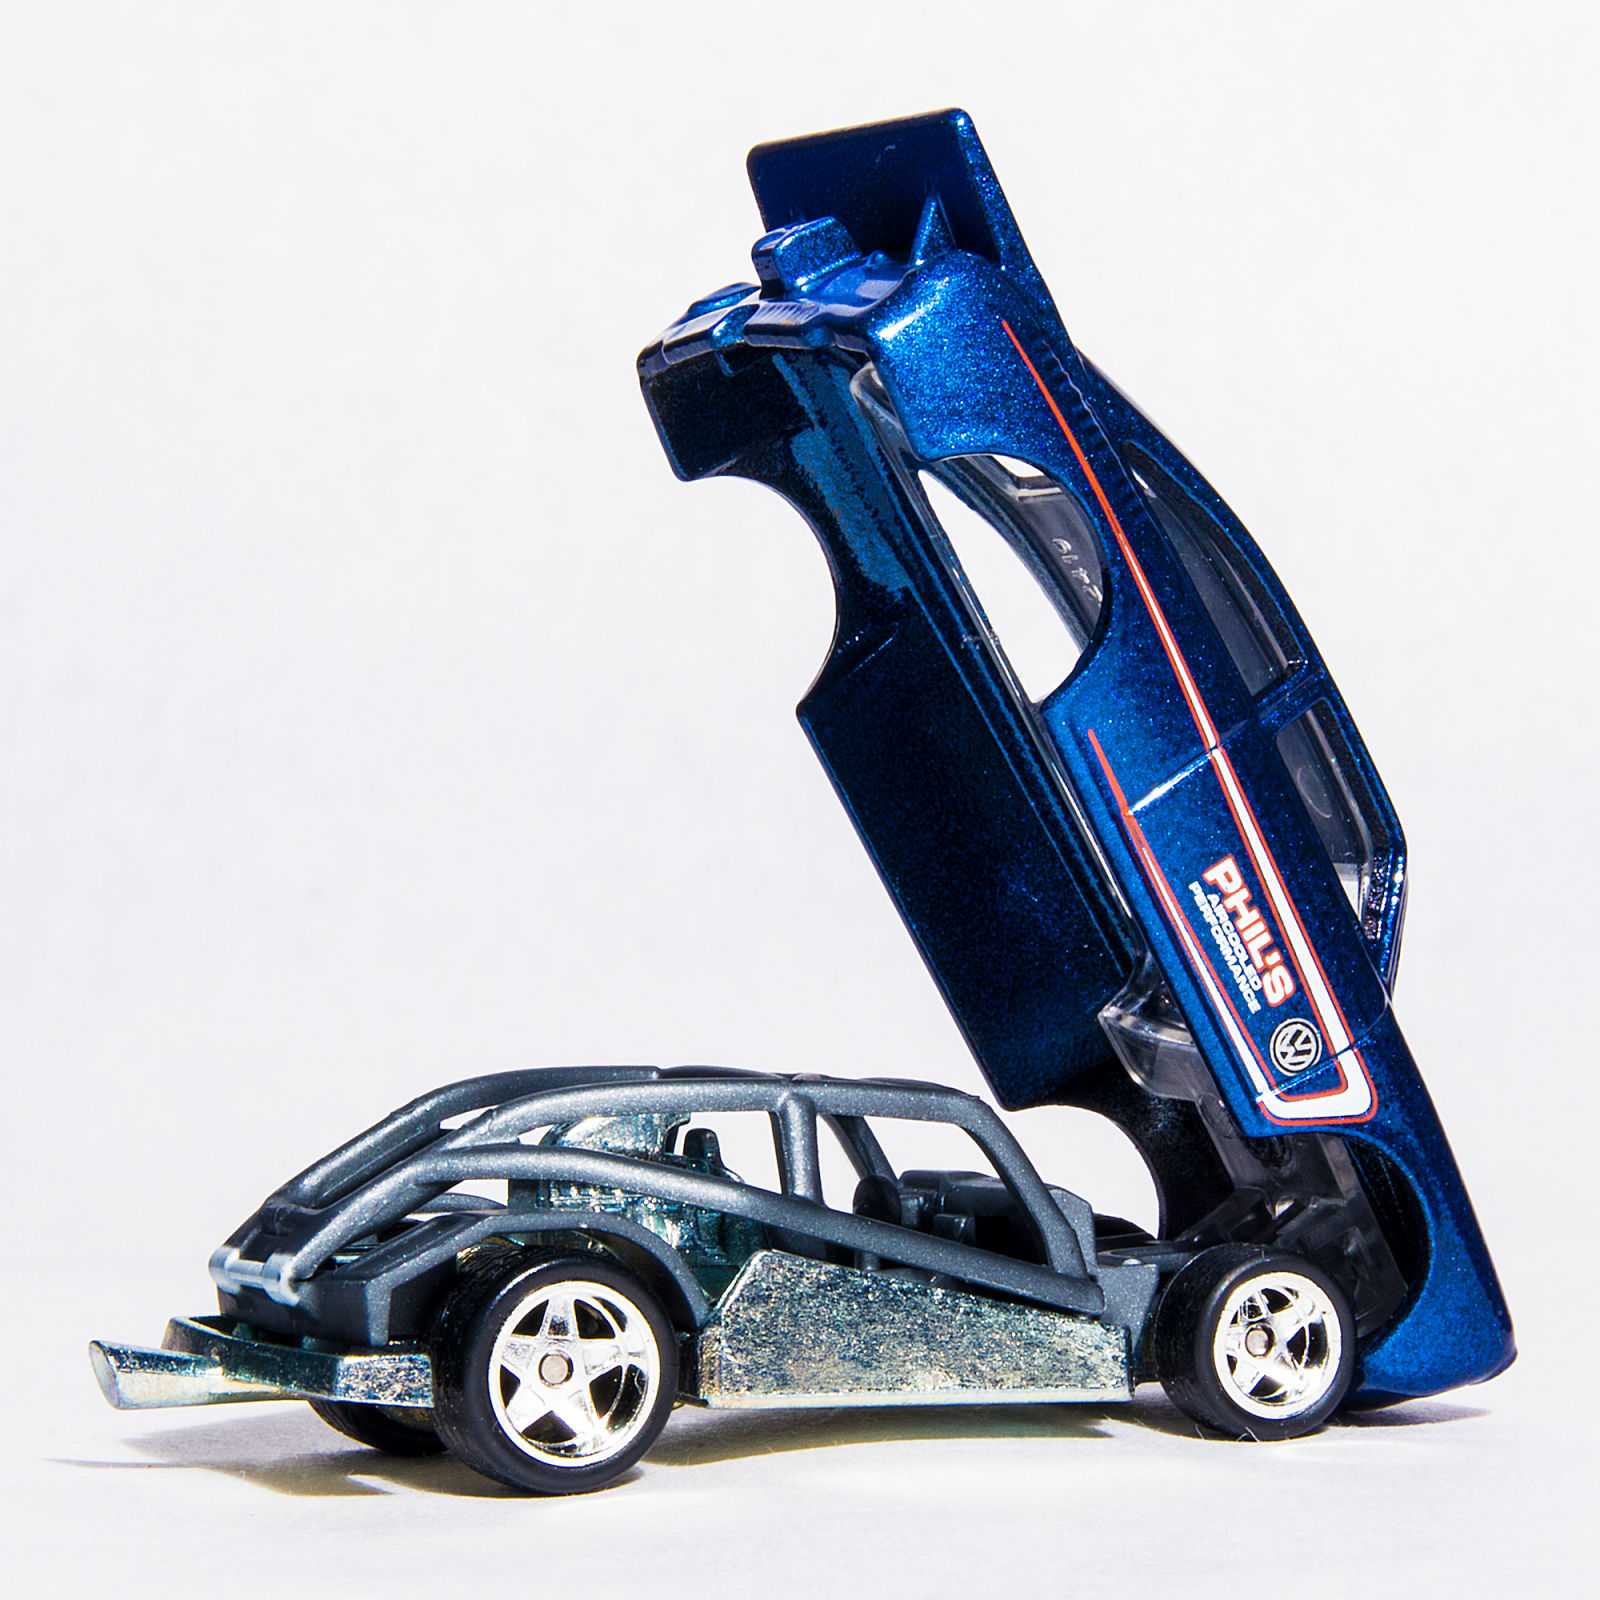 Illustration for article titled 2010 Hot Wheels Garage: 65 VW Fastback